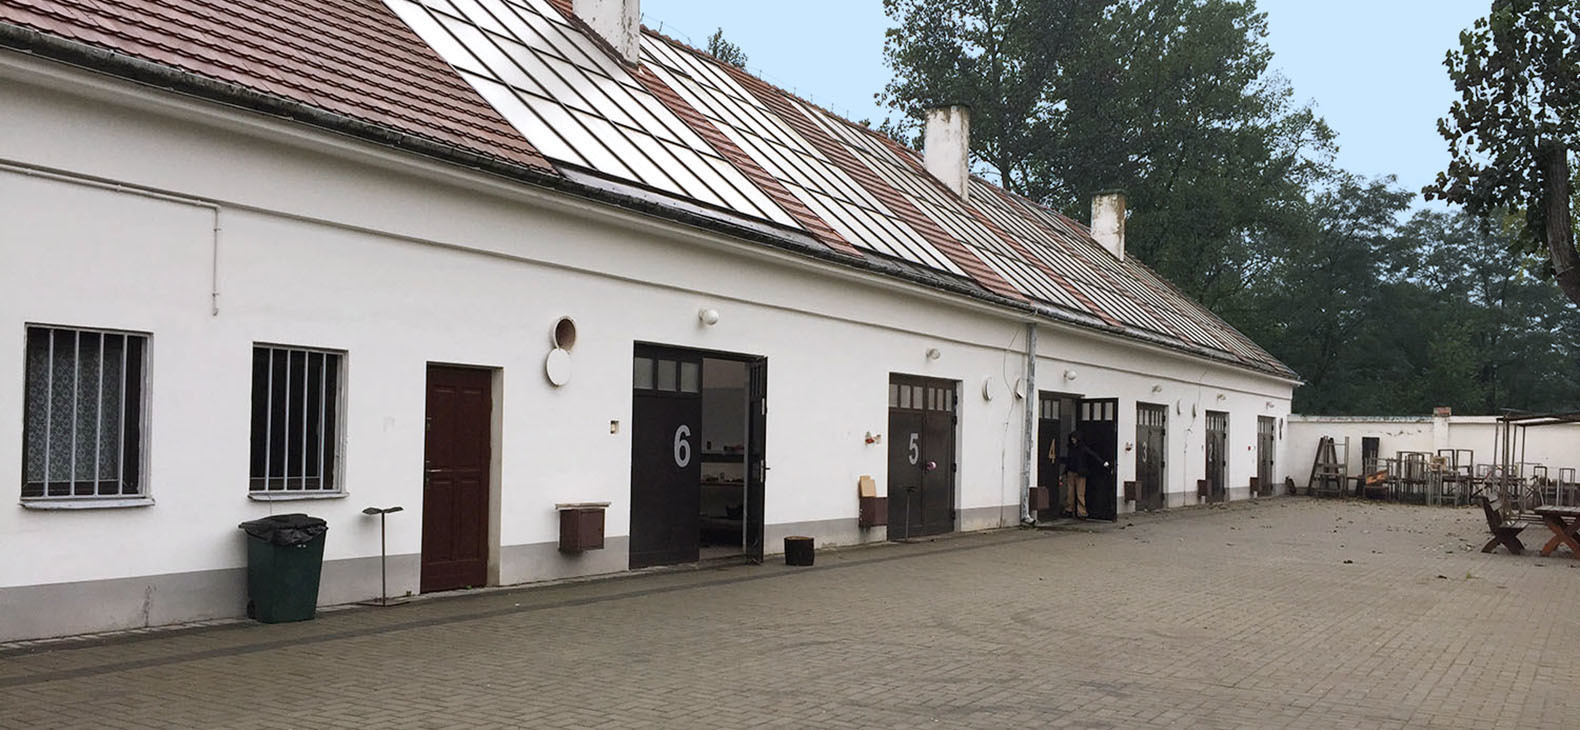 Zentrum für Polnische Skulptur in Oronsko - Orangerie